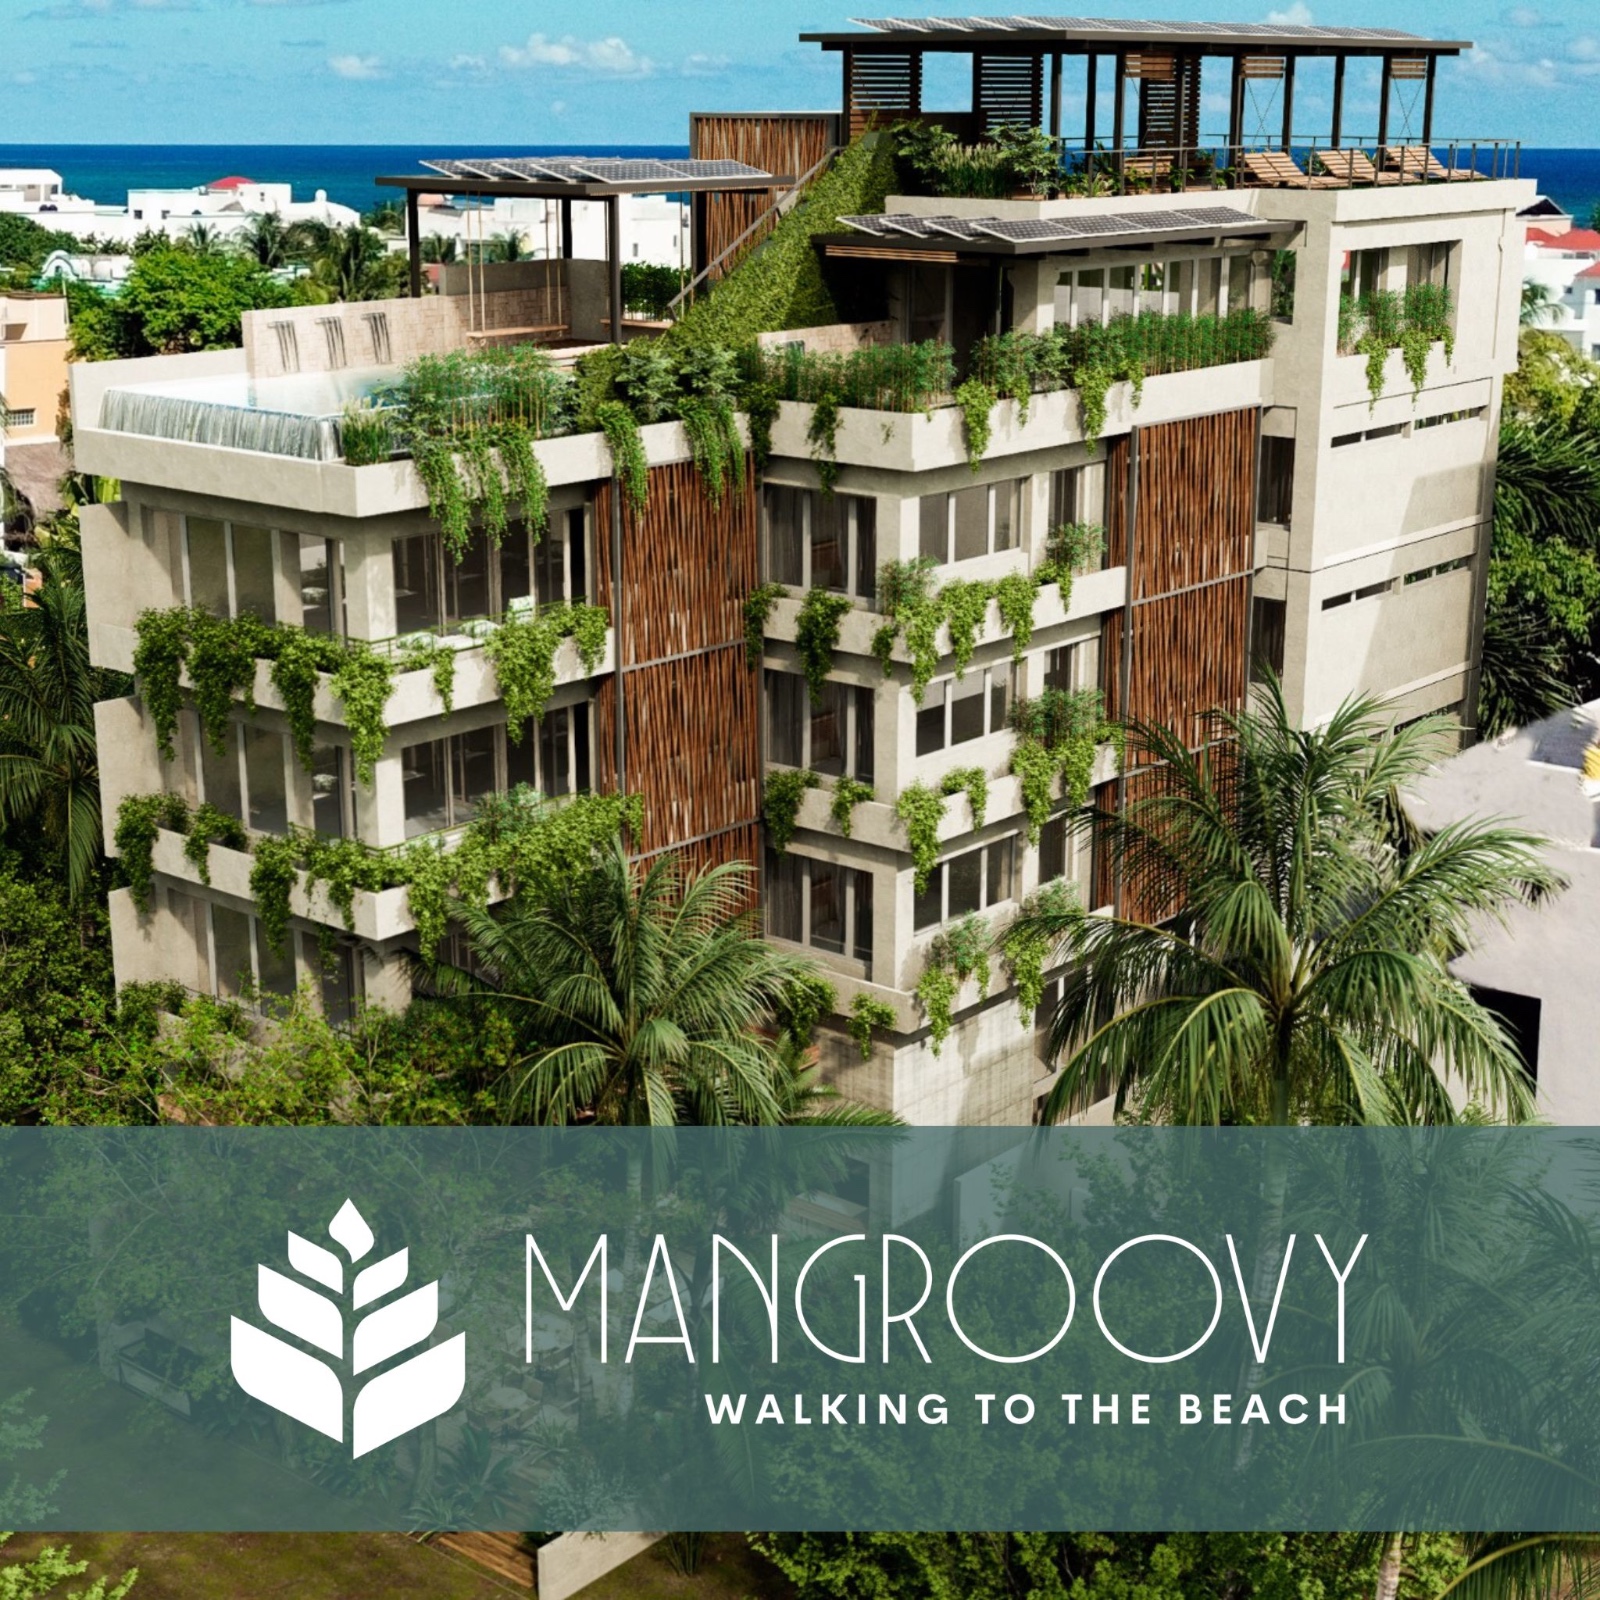 Mangroovy Worrie-Free Residences